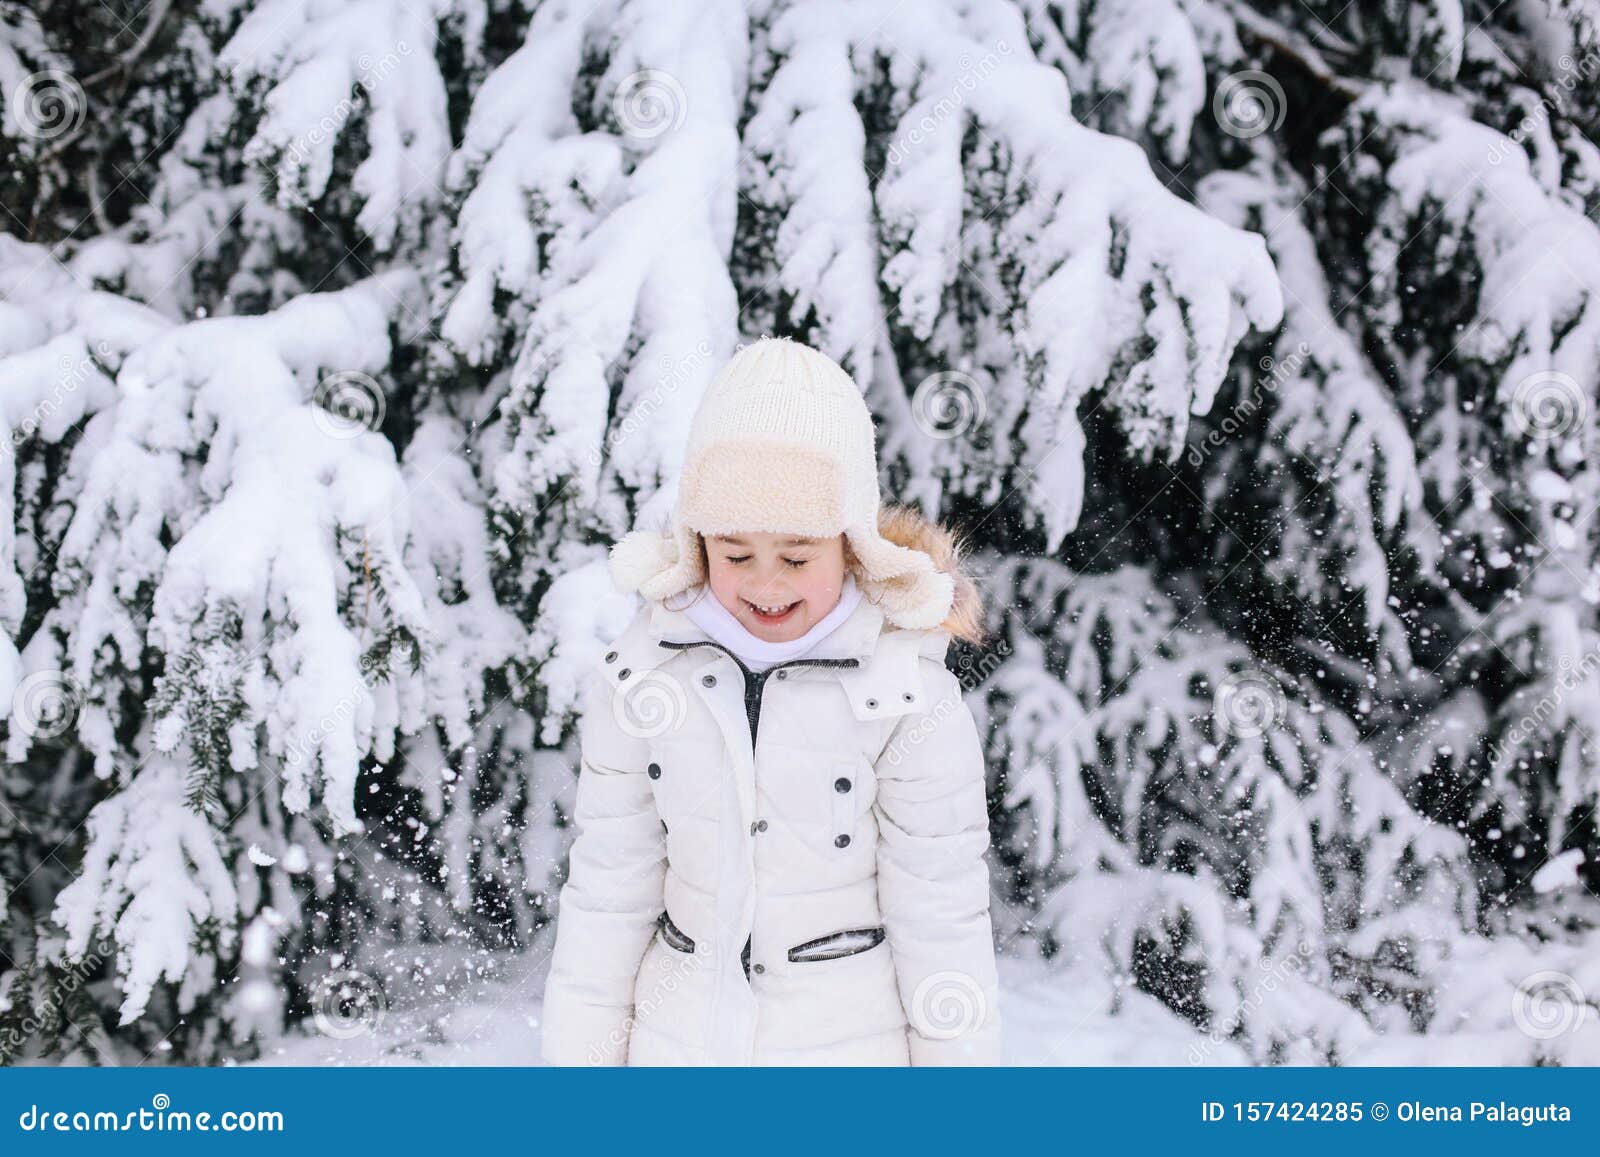 冬天小女孩画像蹒跚学步的孩童在公园玩雪库存图片 图片包括有